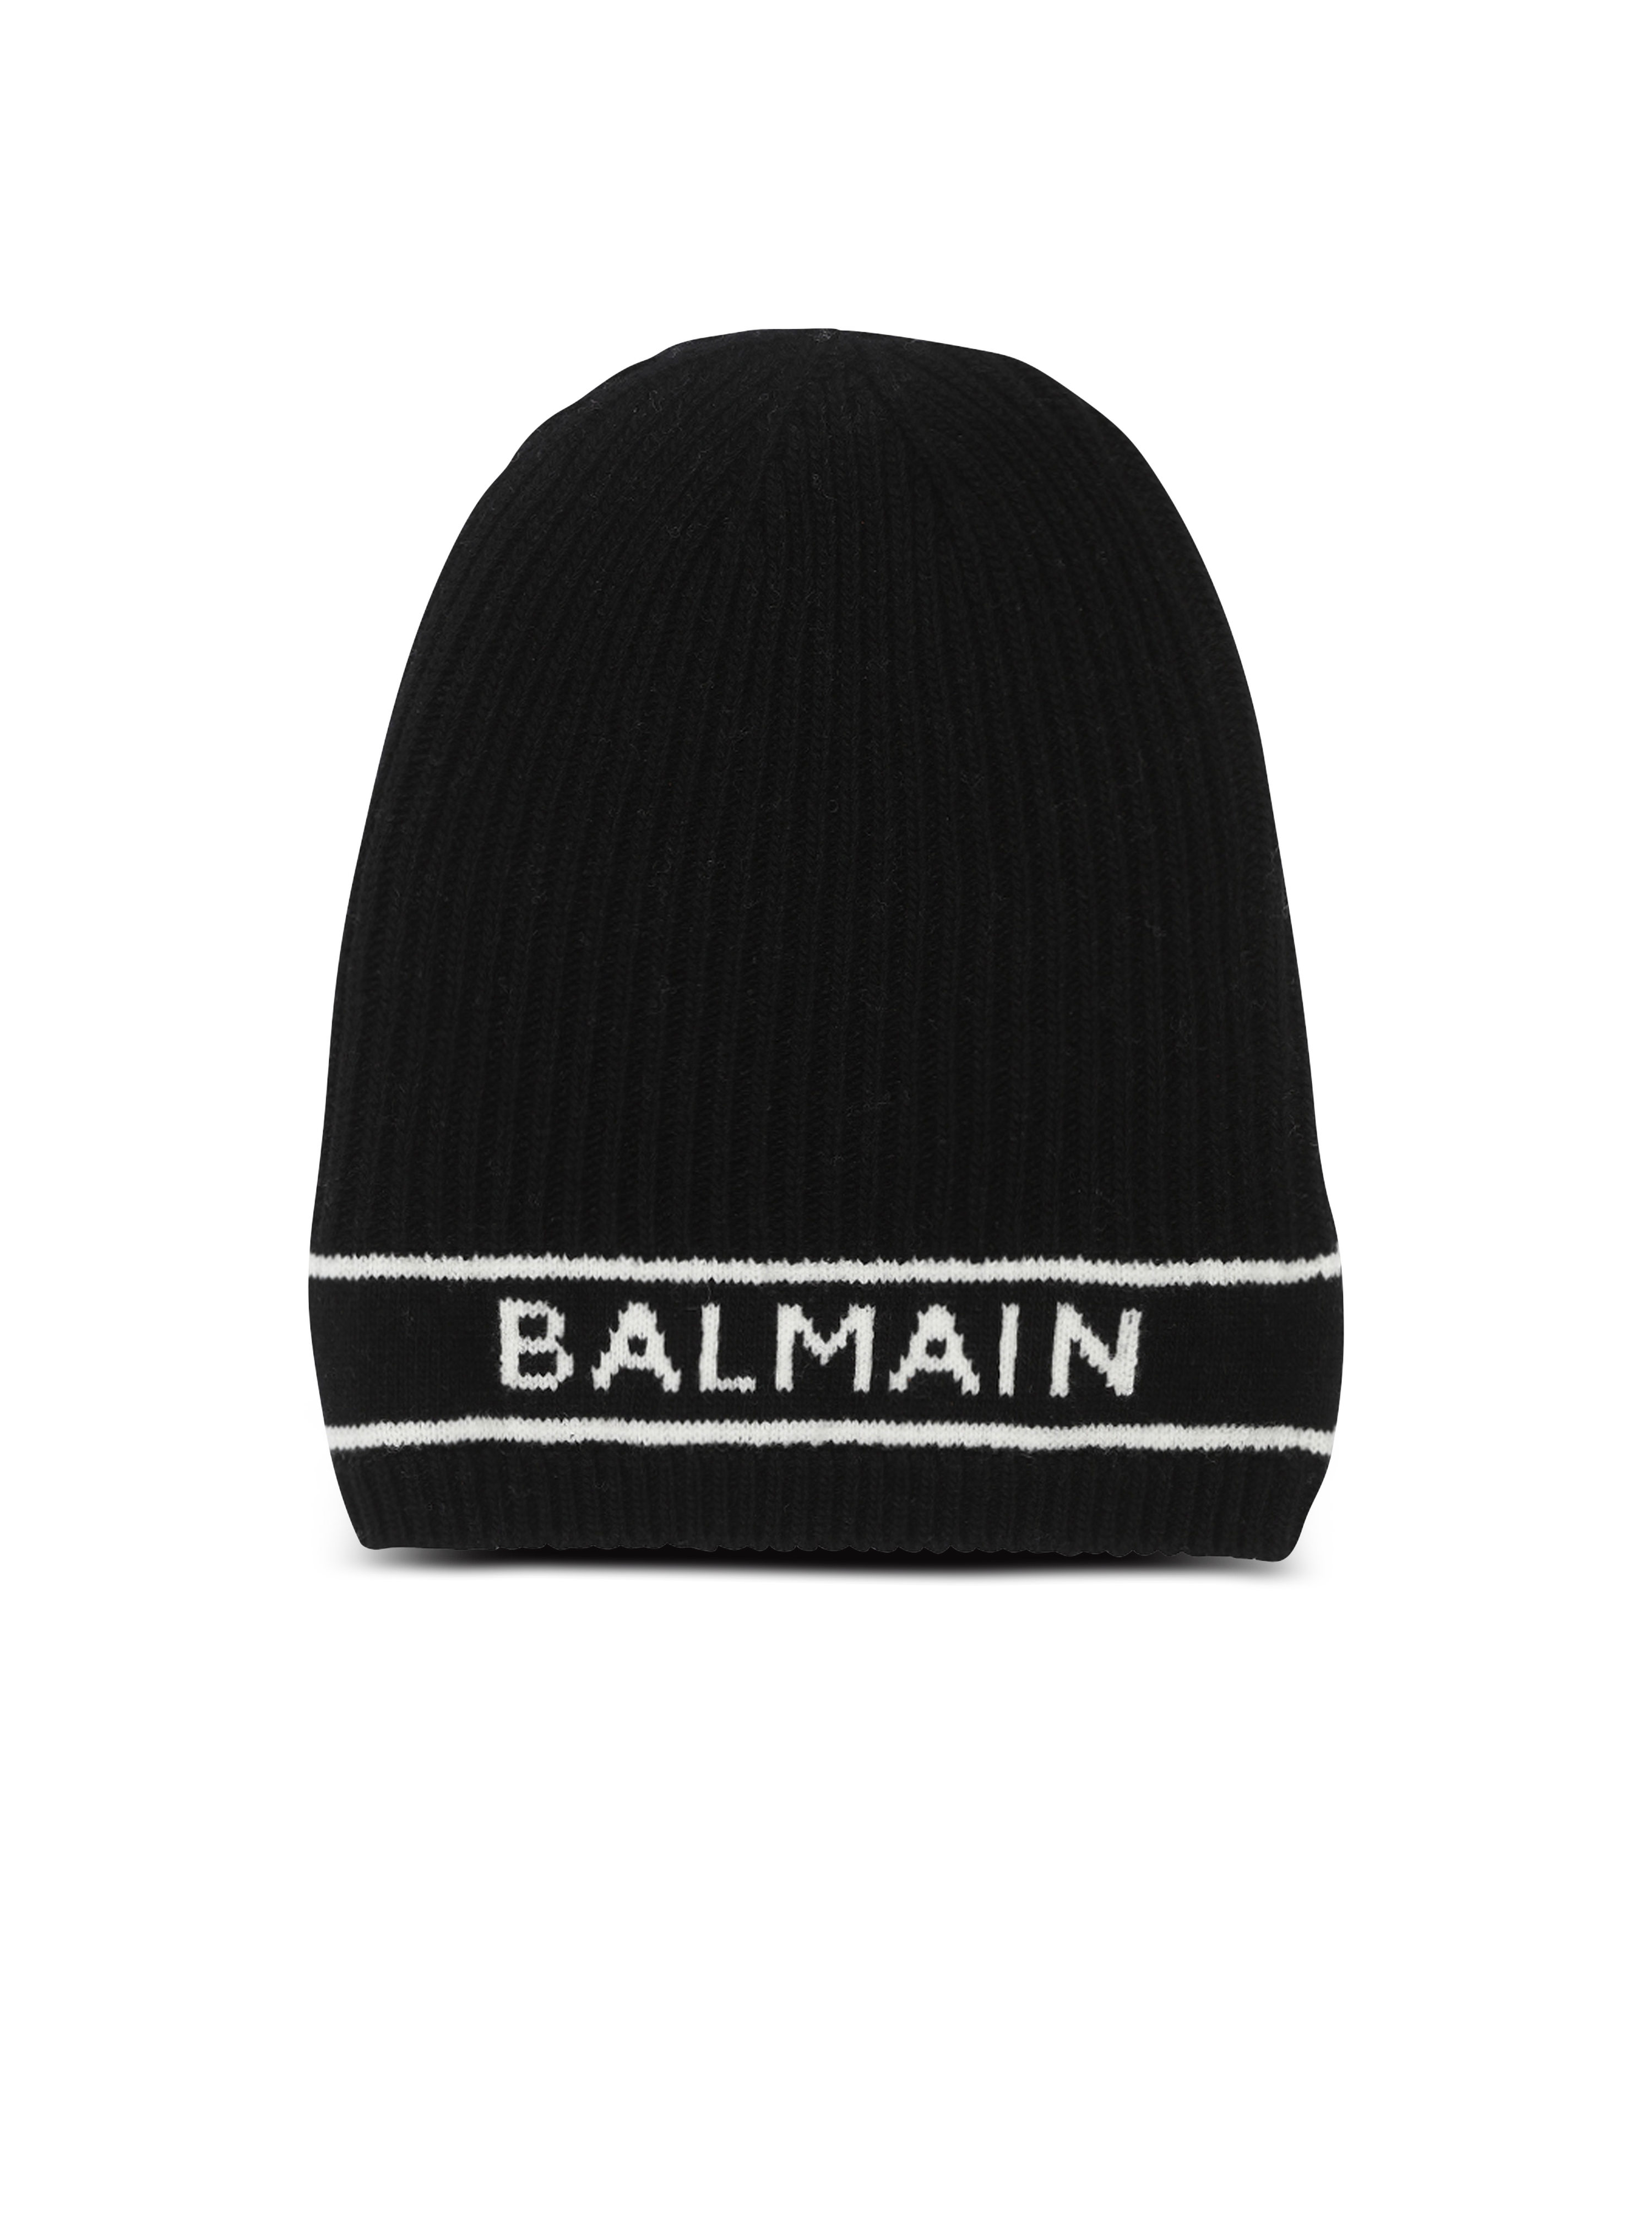 Wool beanie with Balmain logo, black, hi-res